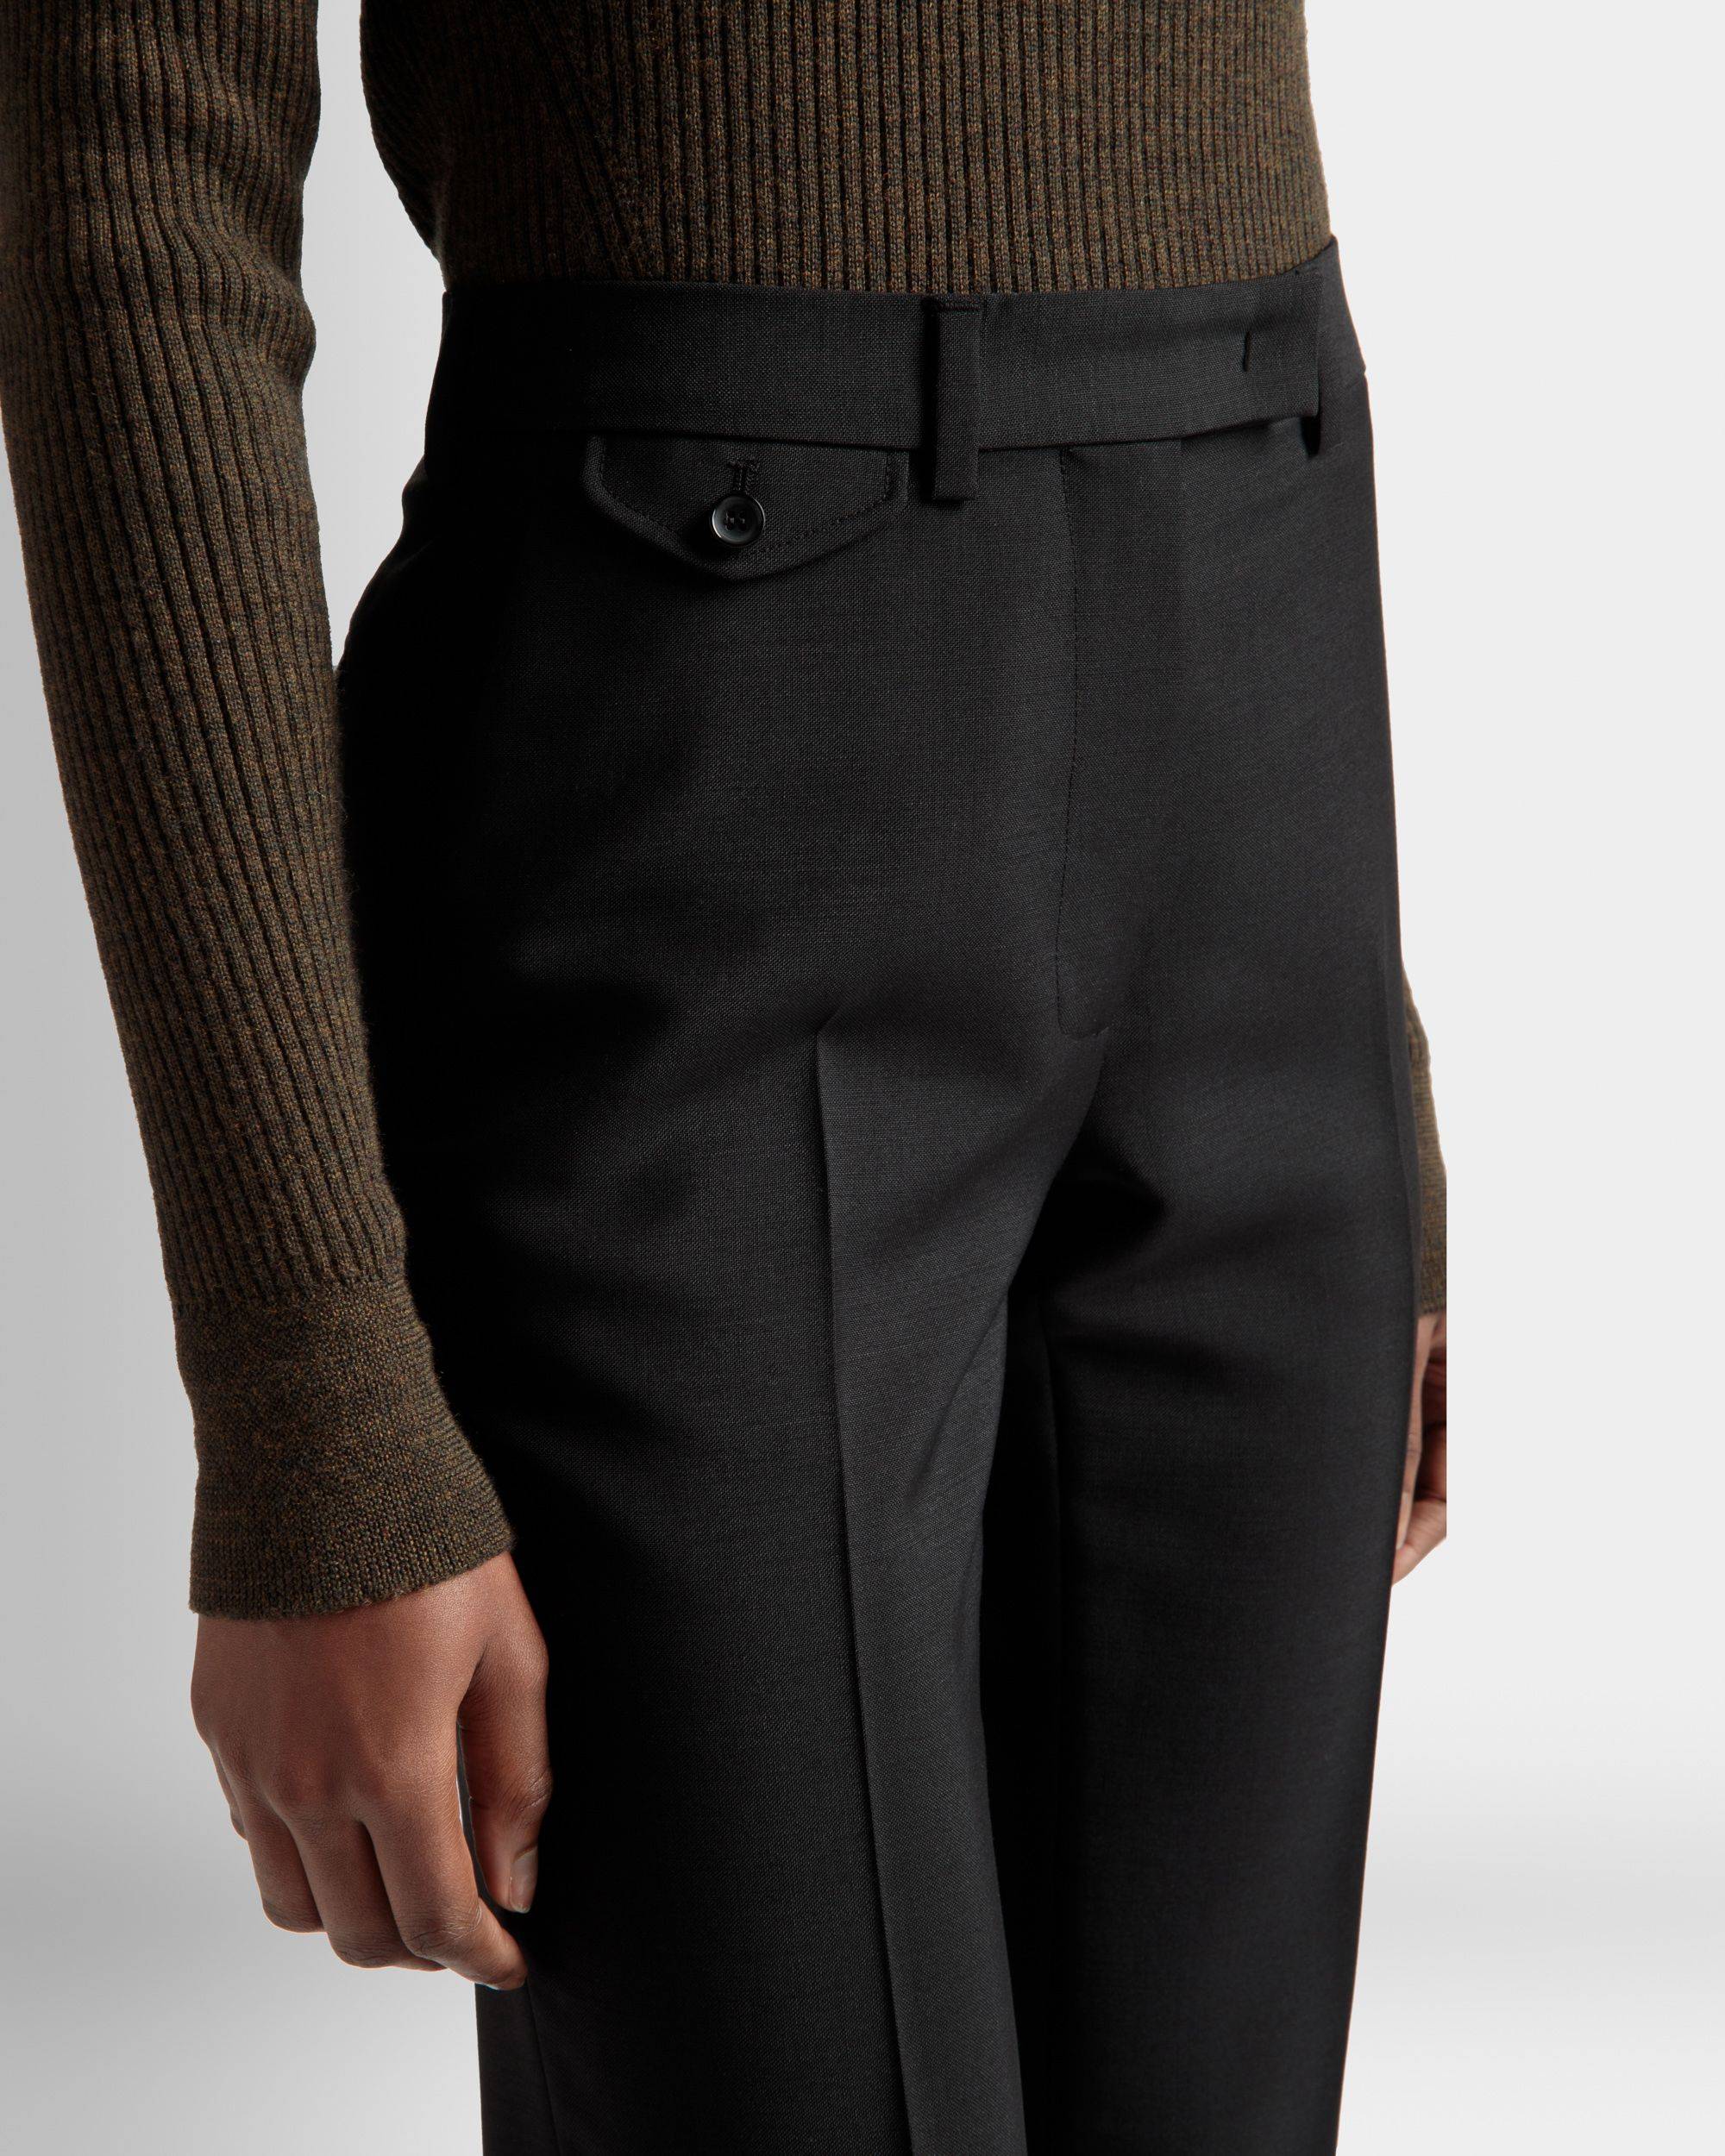 Formelle Hose mit geradem Bein | Hose für Damen | Schwarzes Mohair-Woll-Gemisch | Bally | Model getragen Detail